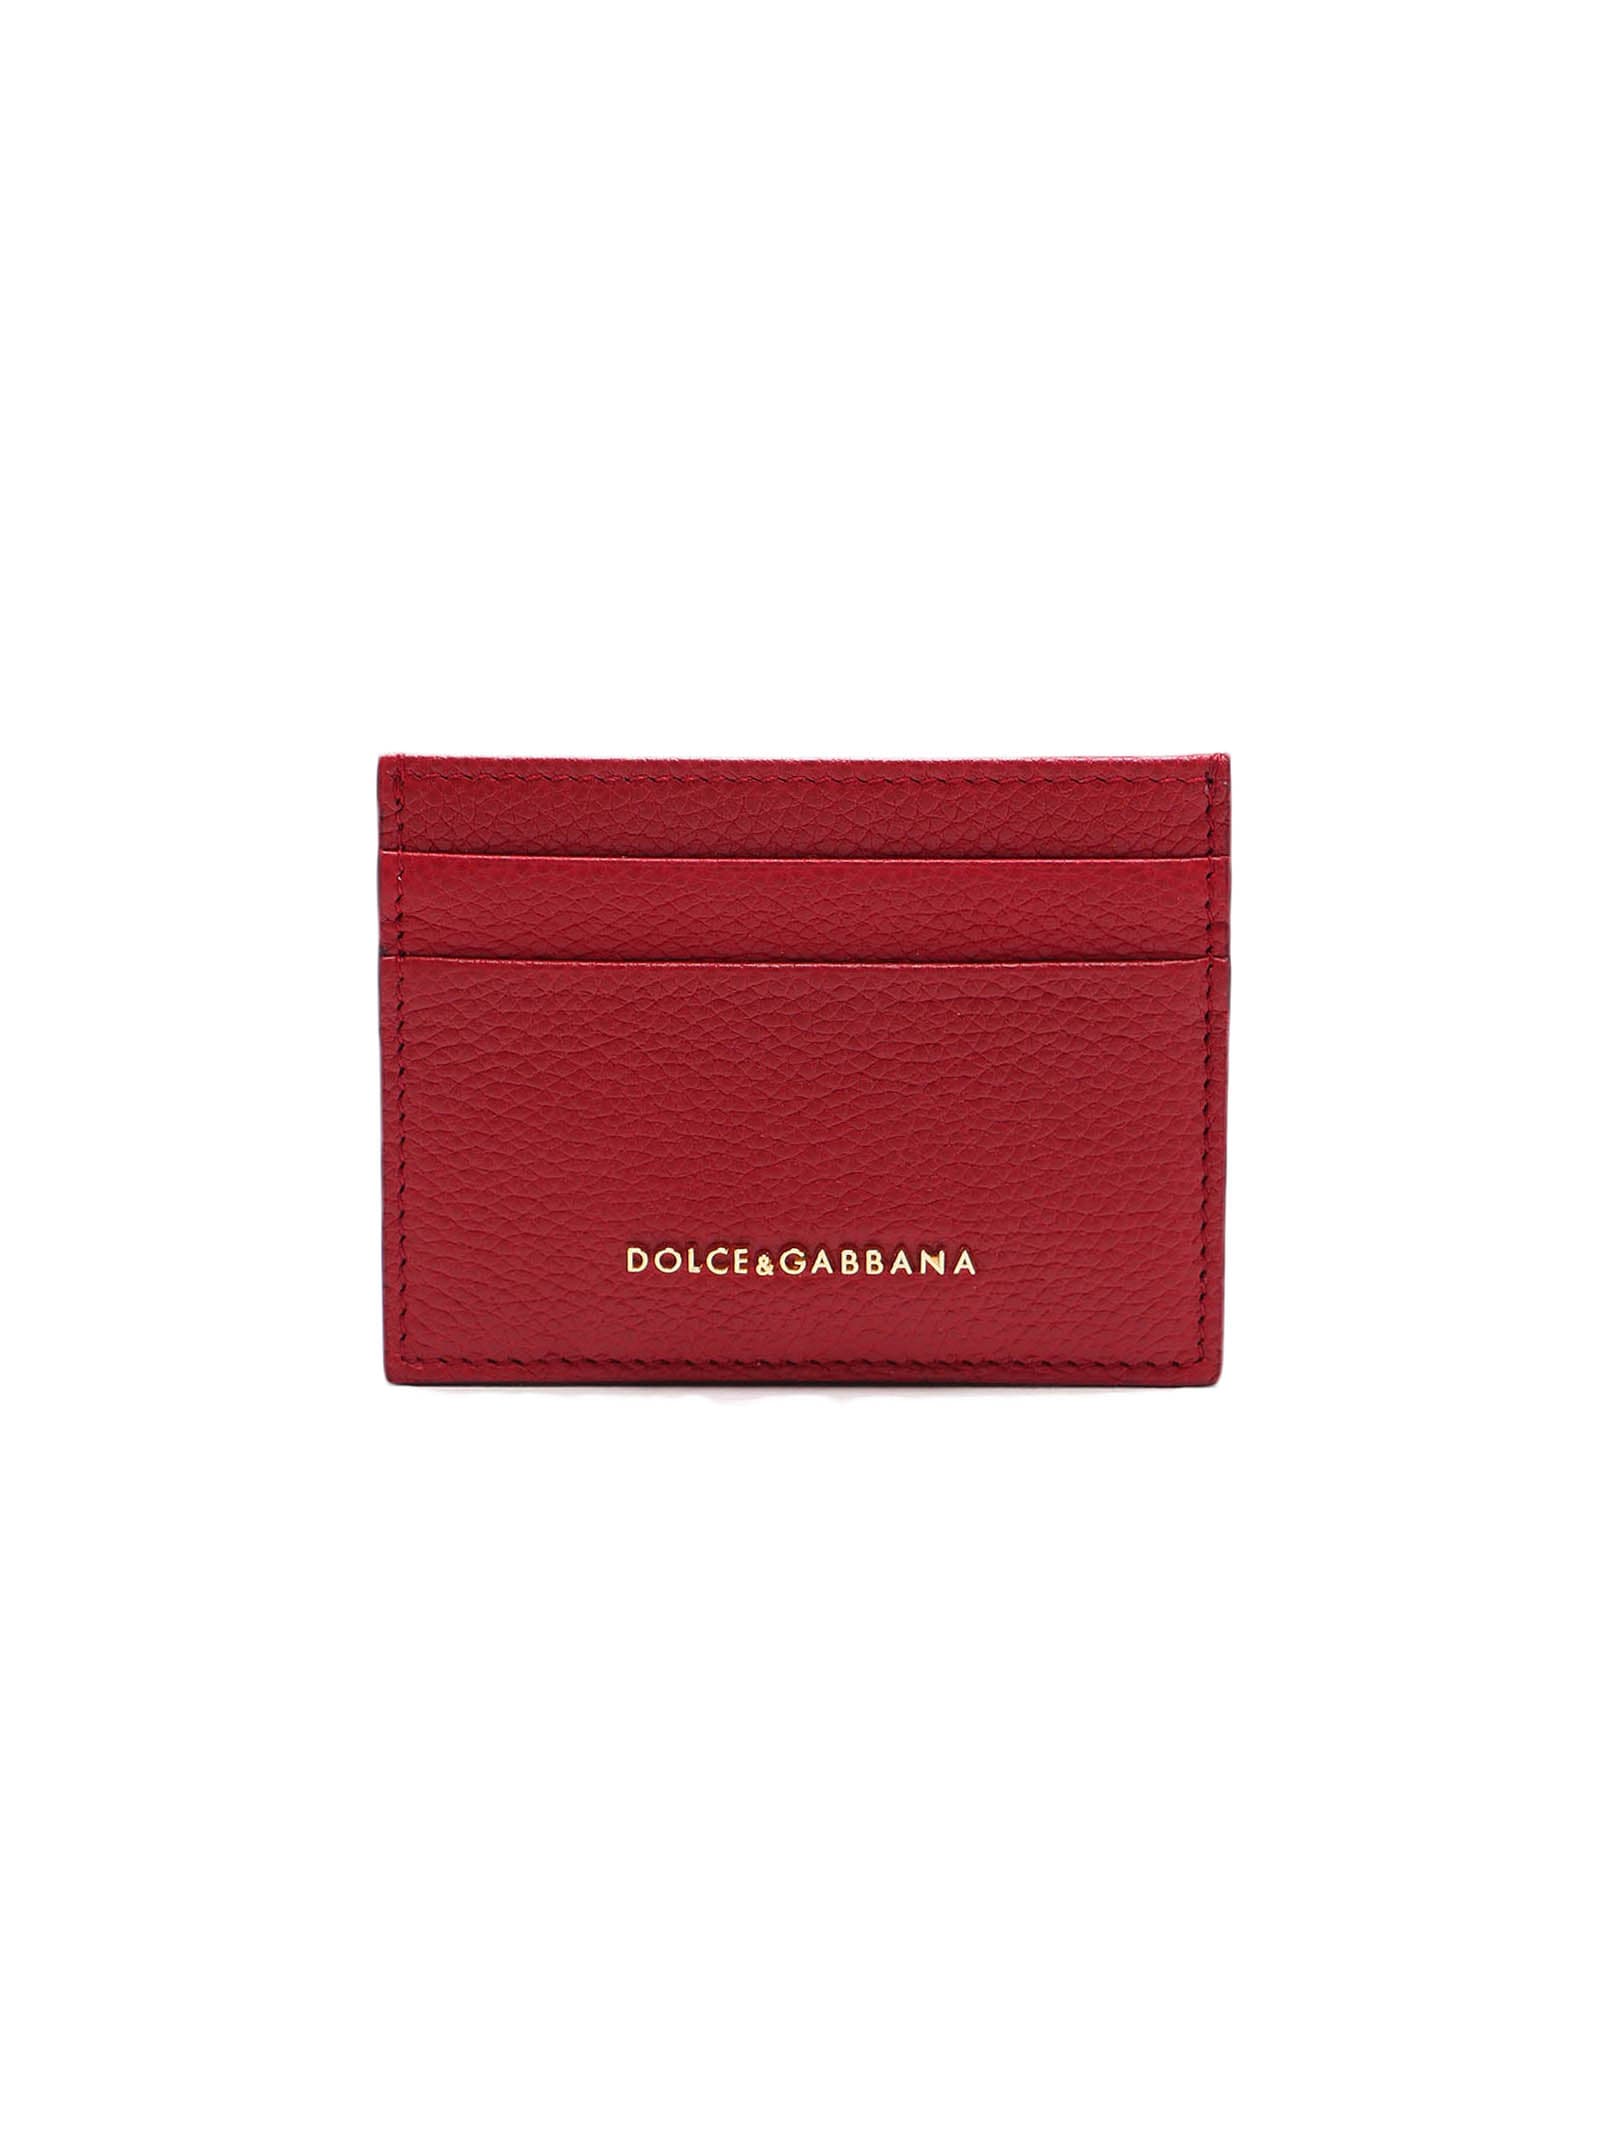 Dolce & Gabbana Cc Case In Rosso Papavero